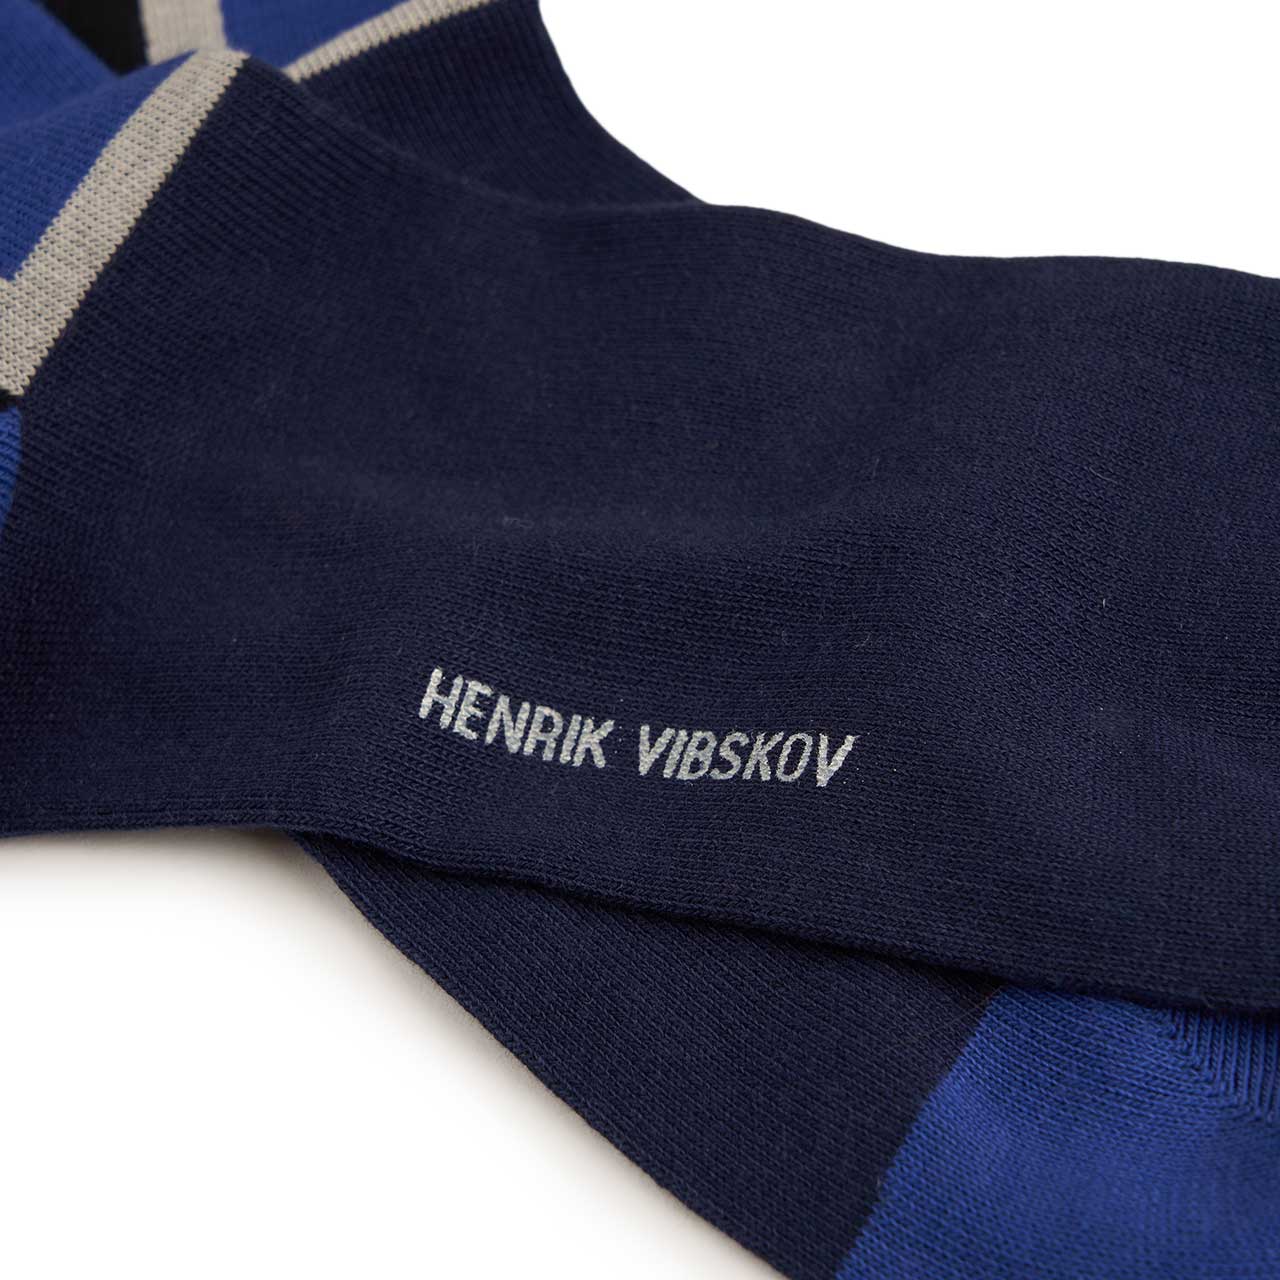 henrik vibskov henrik vibskov color block socks (navy) SS22-S908